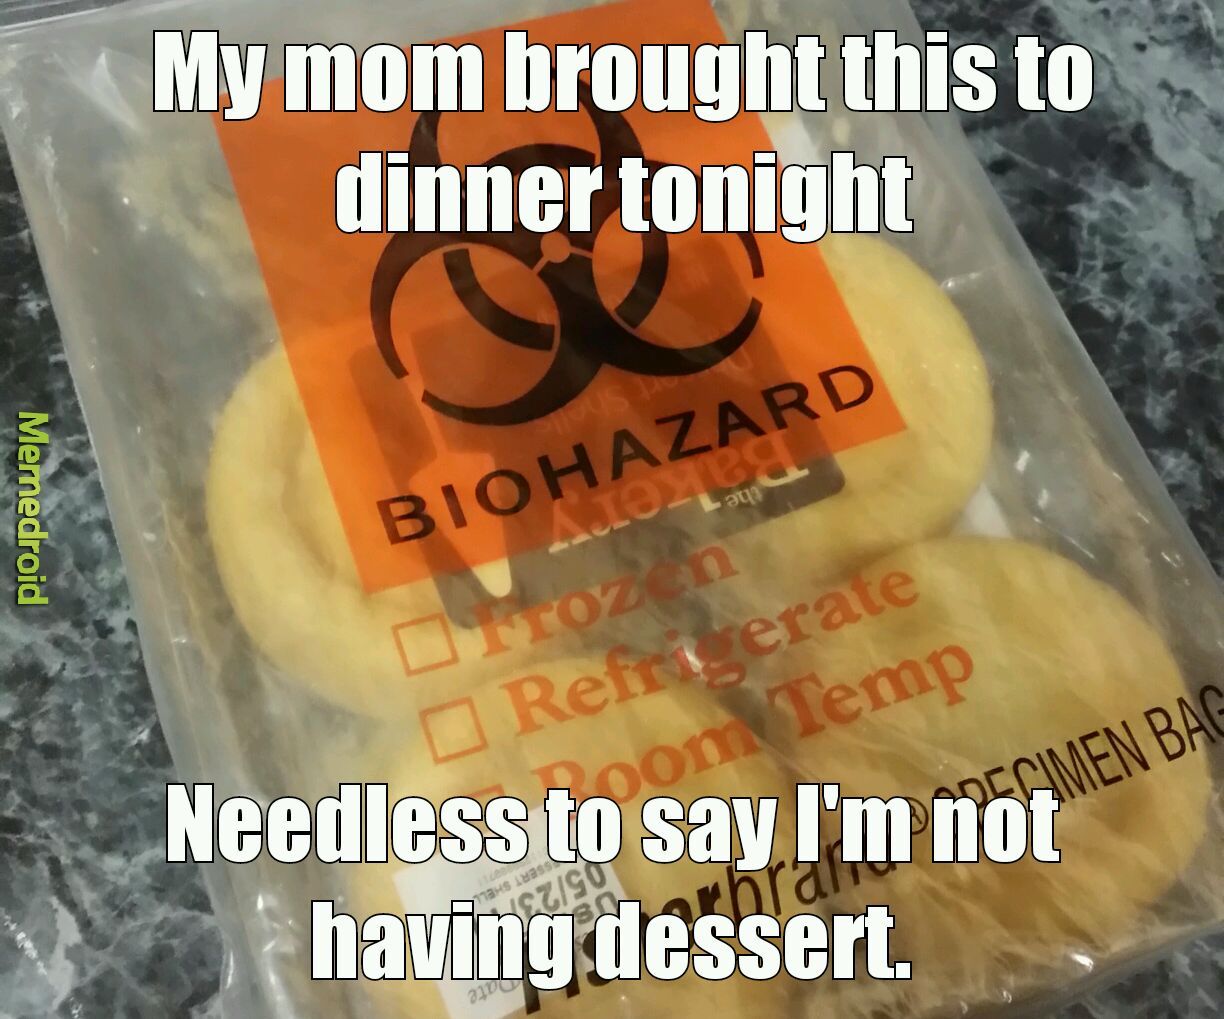 No dessert for you! - meme